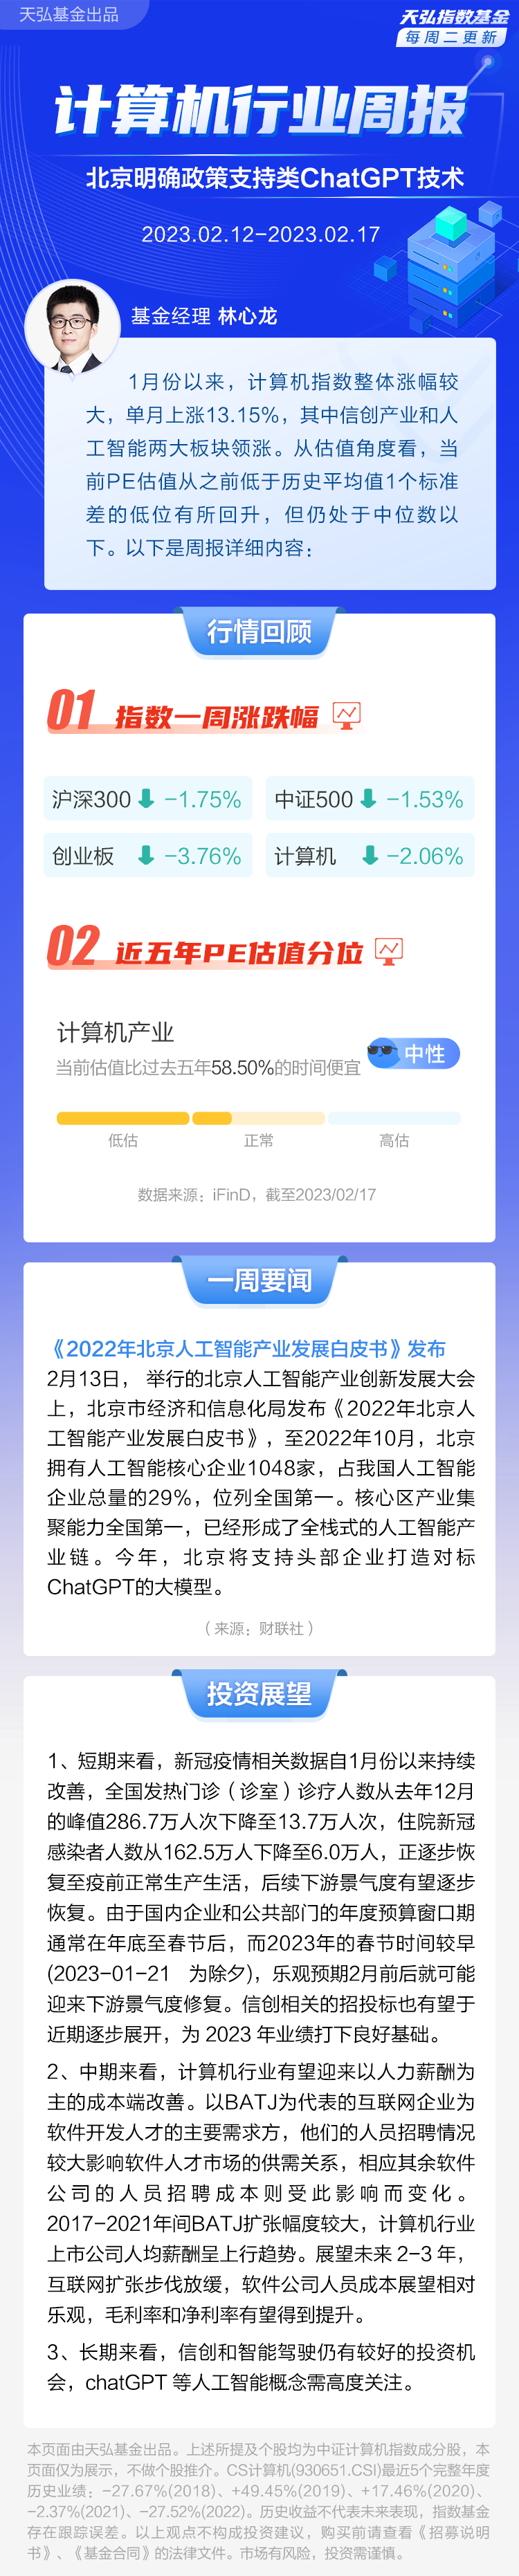 【计算机周报】北京明确政策支持类ChatGPT技术